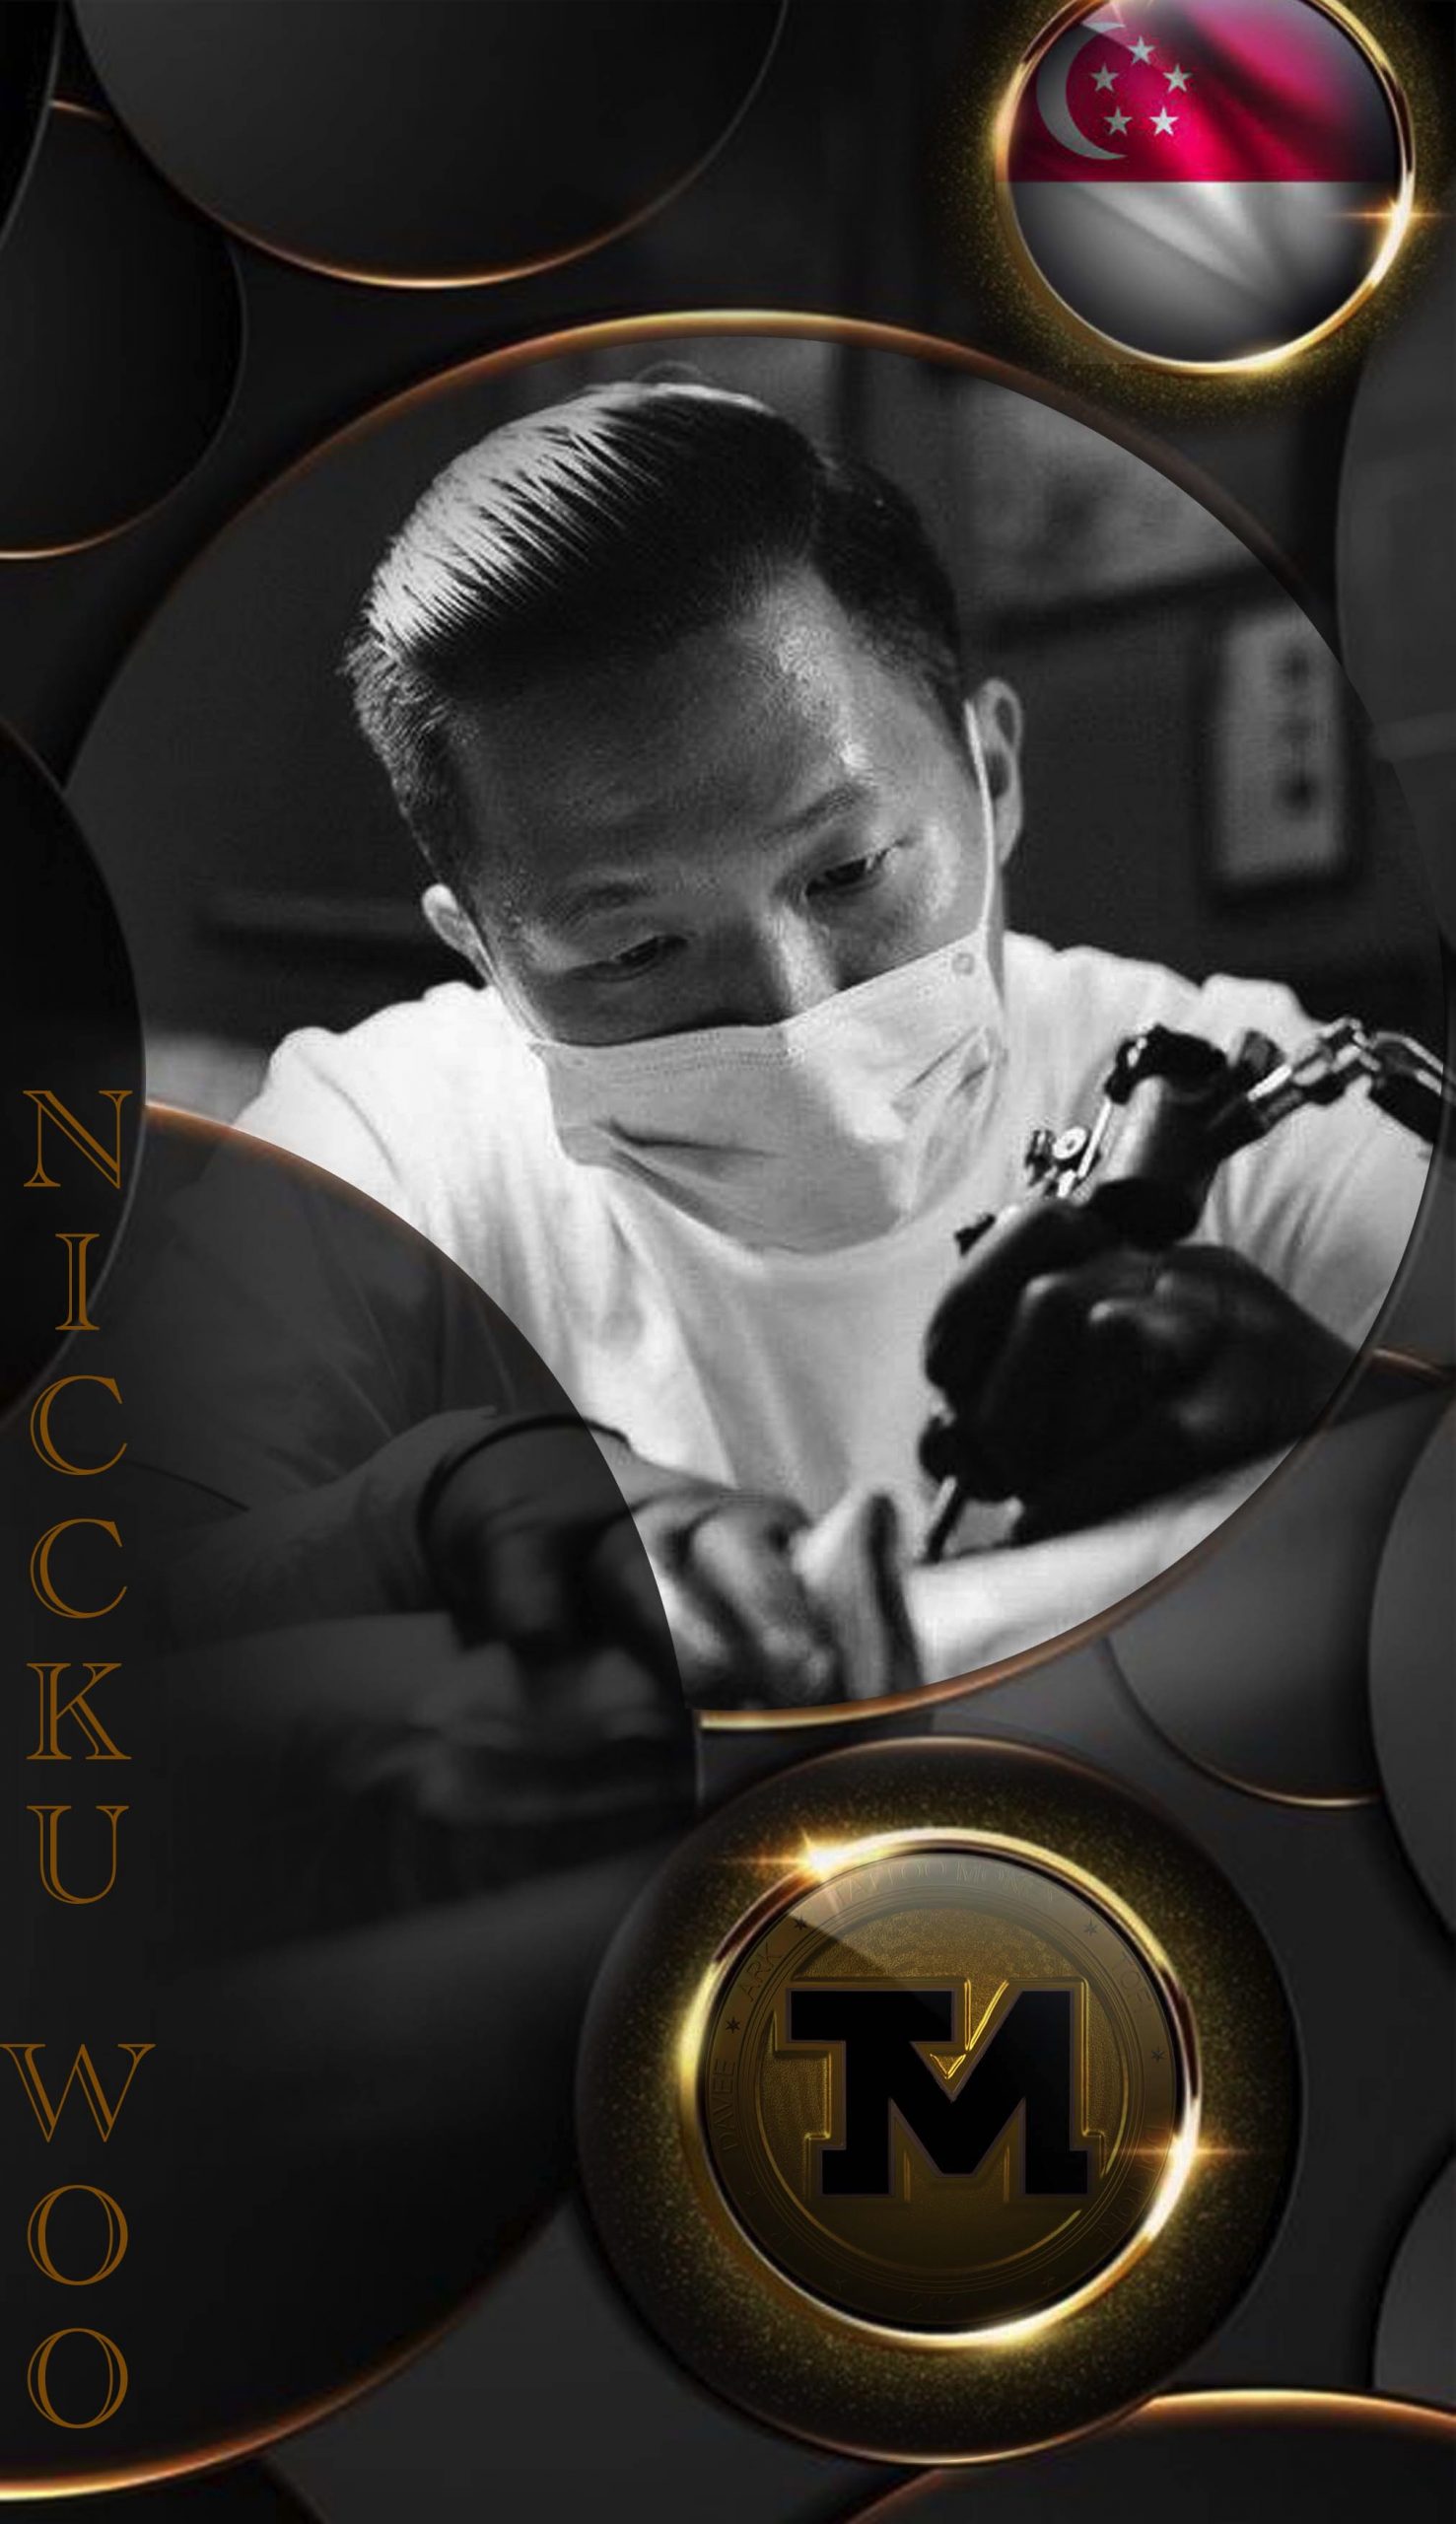 Niccku Woo - Owner and Tattoo Artist at Galaxy Tattoo - Singapore